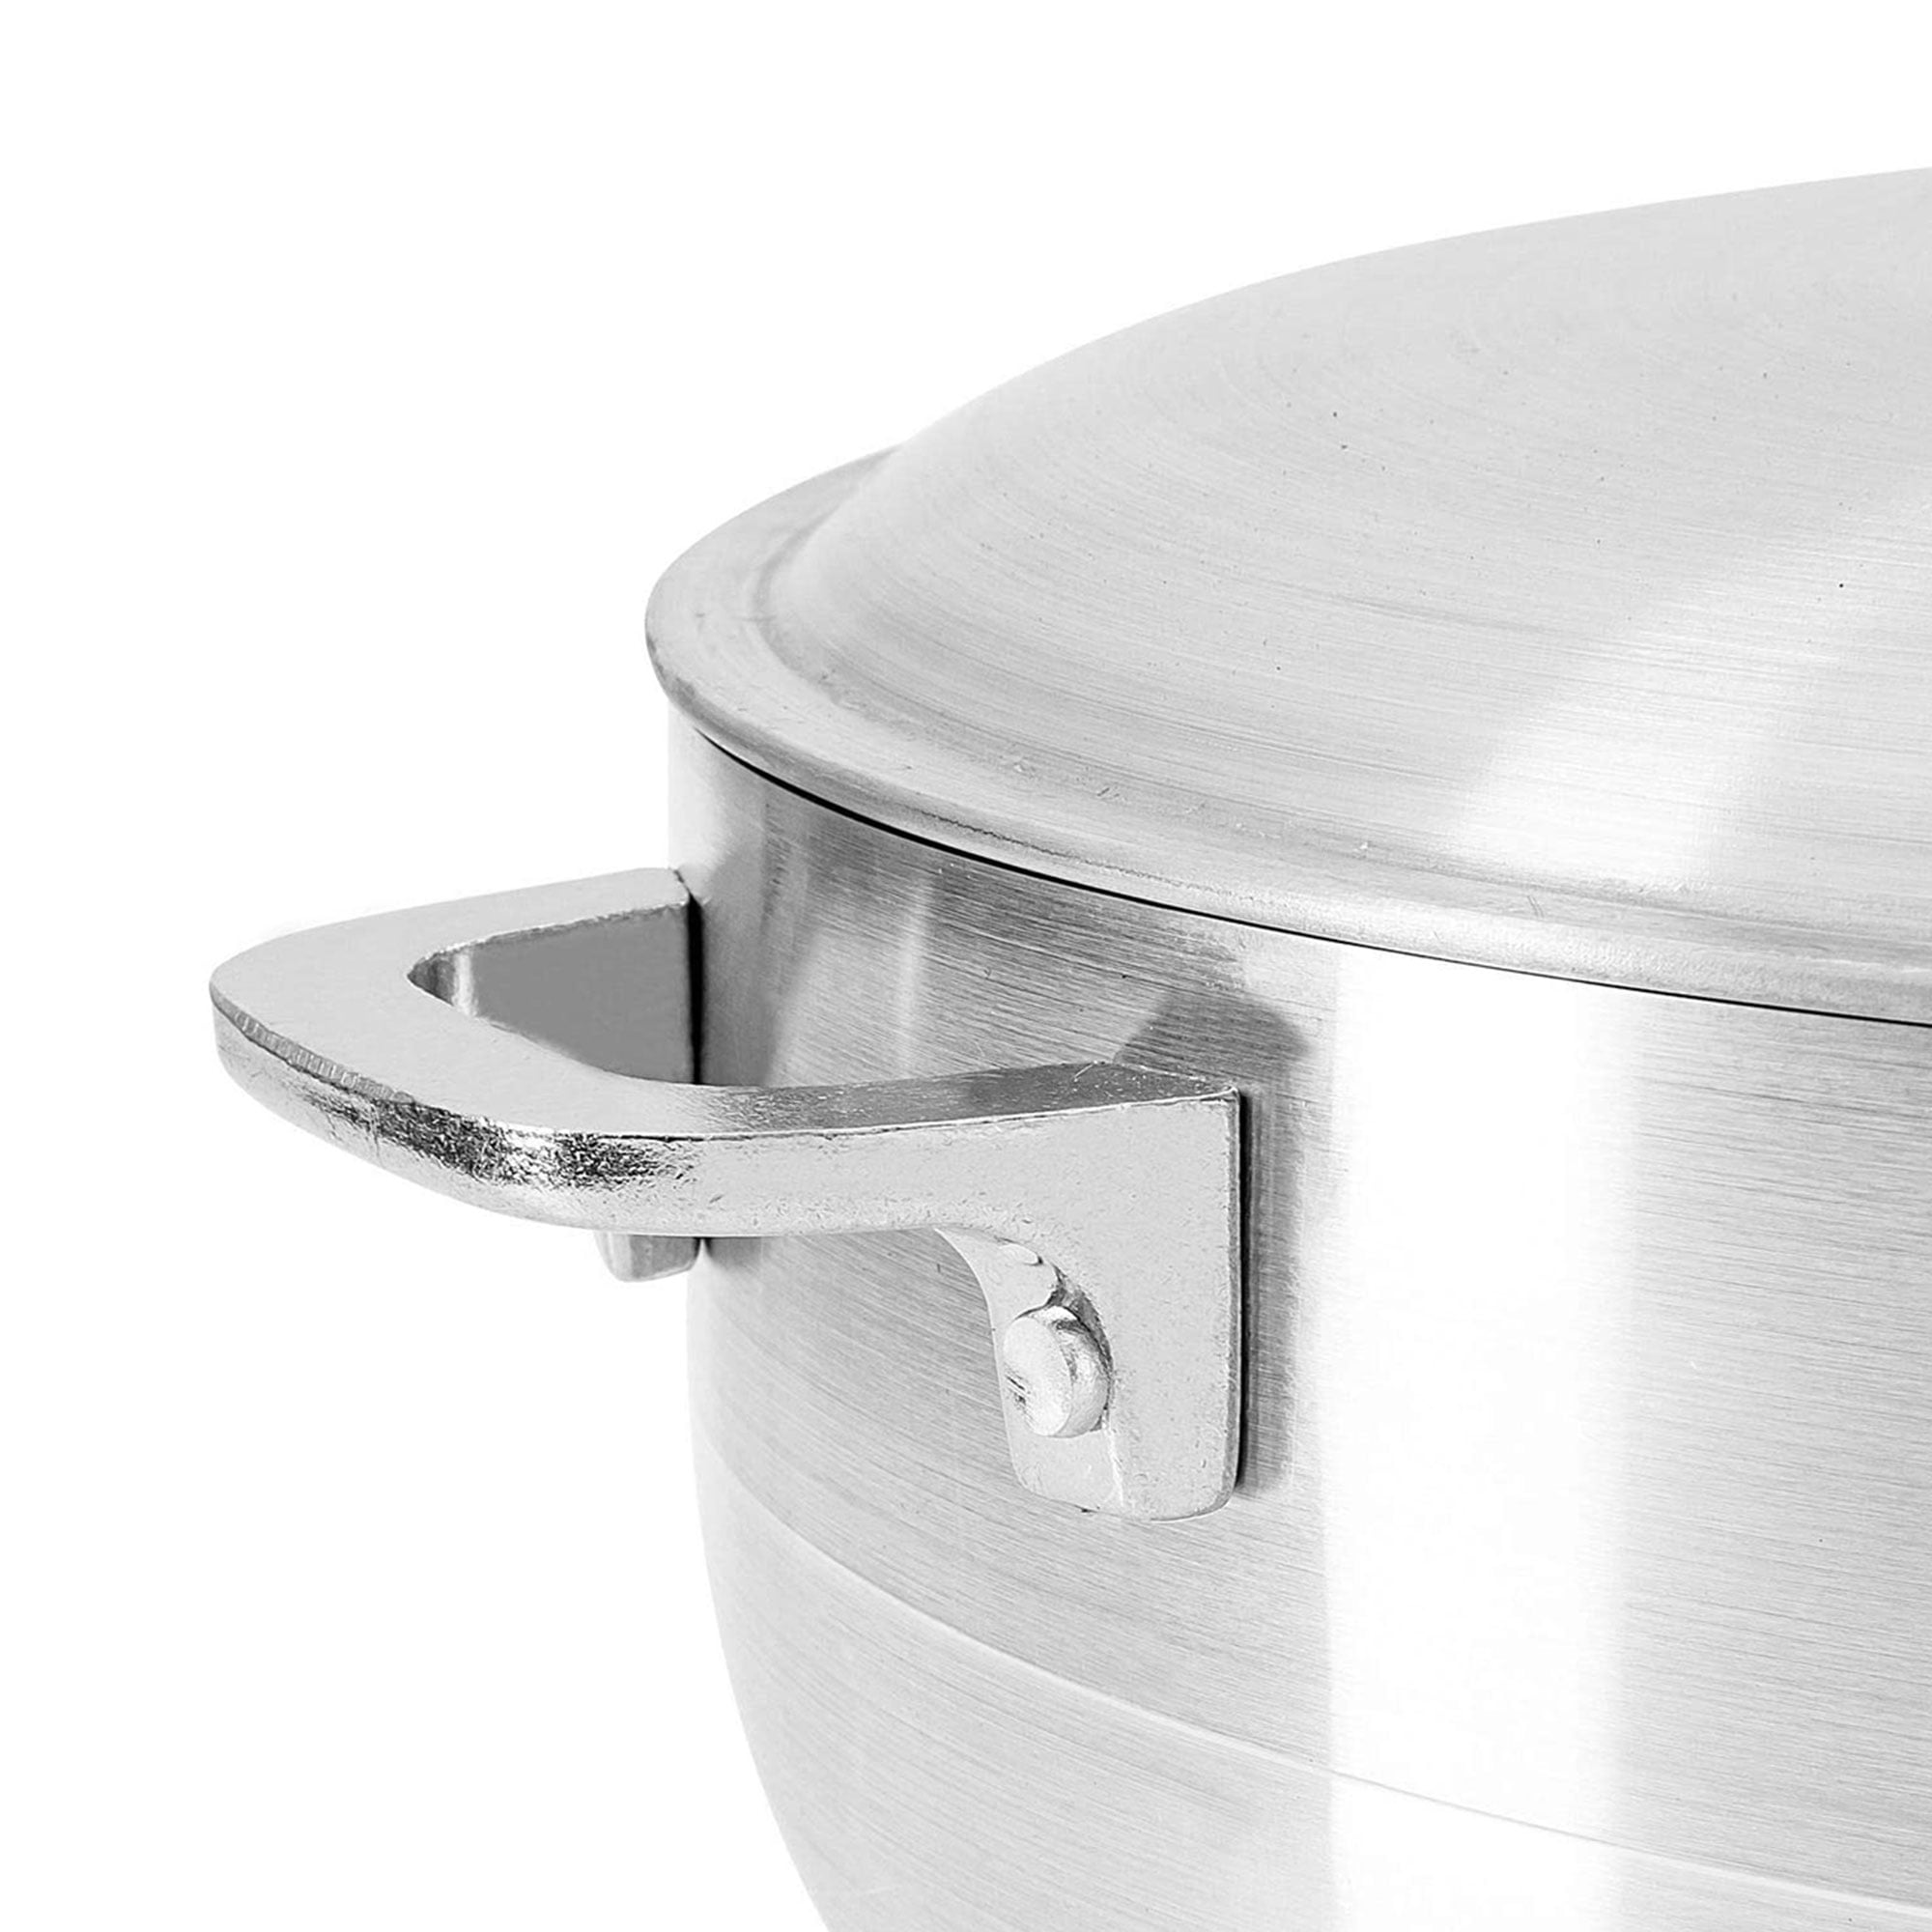 Alpine Cuisine 13-Quart Aluminum Caldero Stock Pot with Glass Lid, Coo